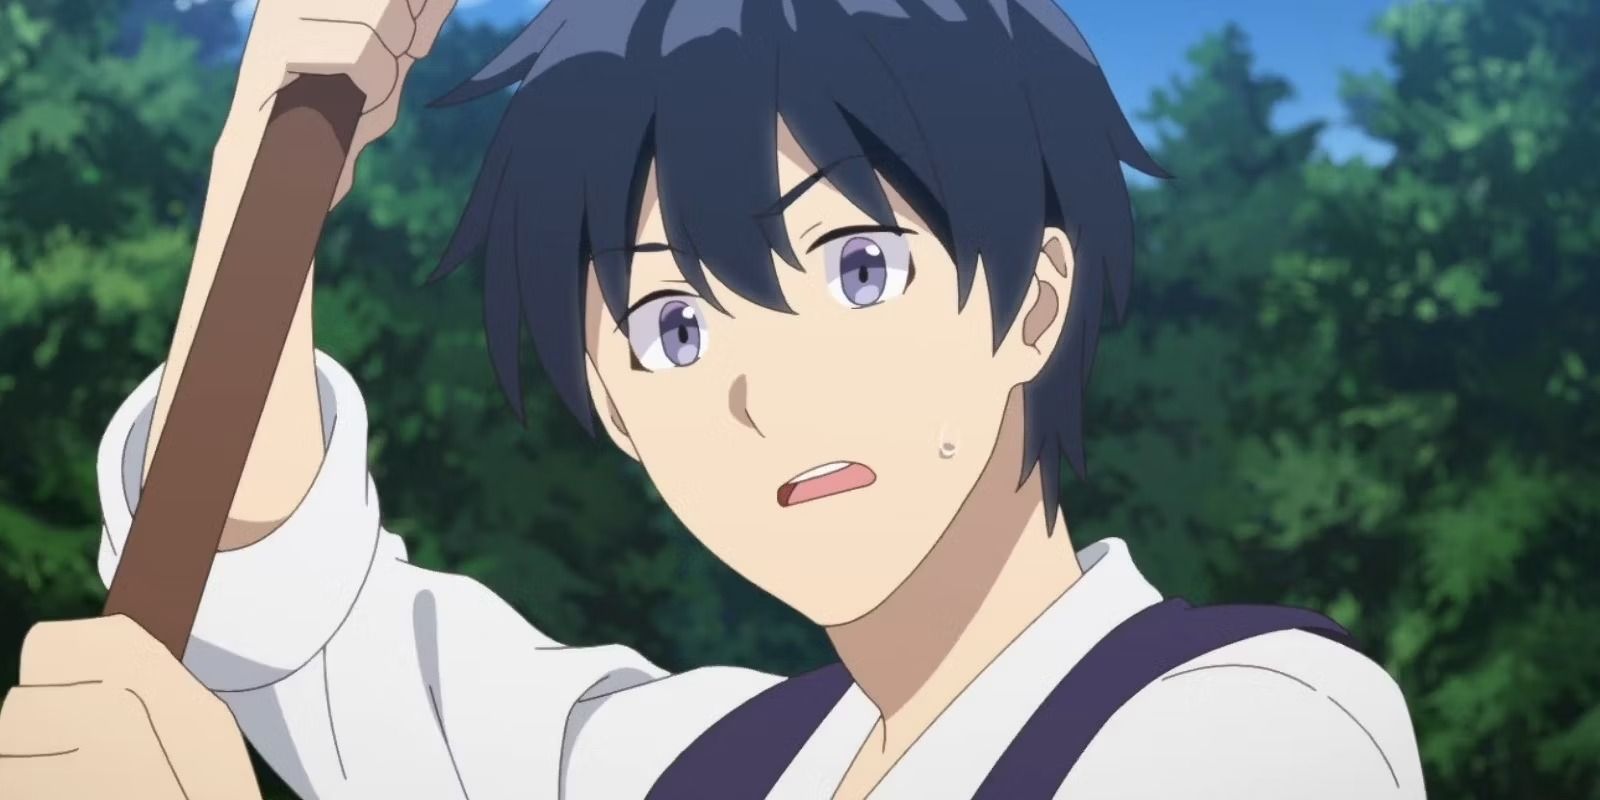 Hiraku as seen in the anime. (image via Zero-G)